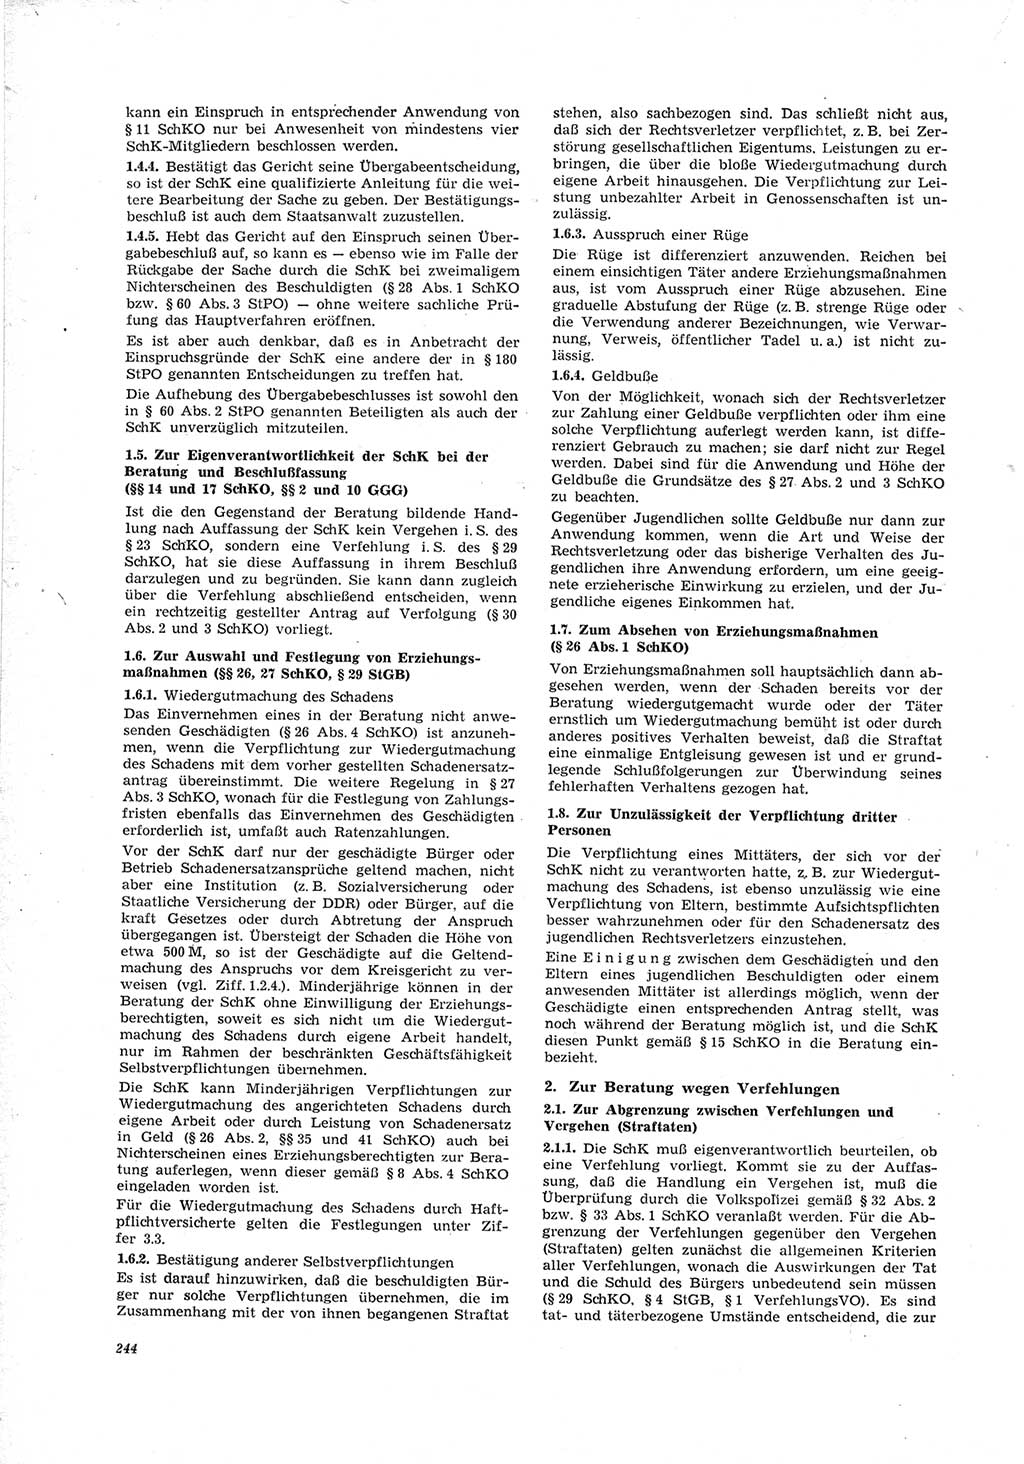 Neue Justiz (NJ), Zeitschrift für Recht und Rechtswissenschaft [Deutsche Demokratische Republik (DDR)], 23. Jahrgang 1969, Seite 244 (NJ DDR 1969, S. 244)